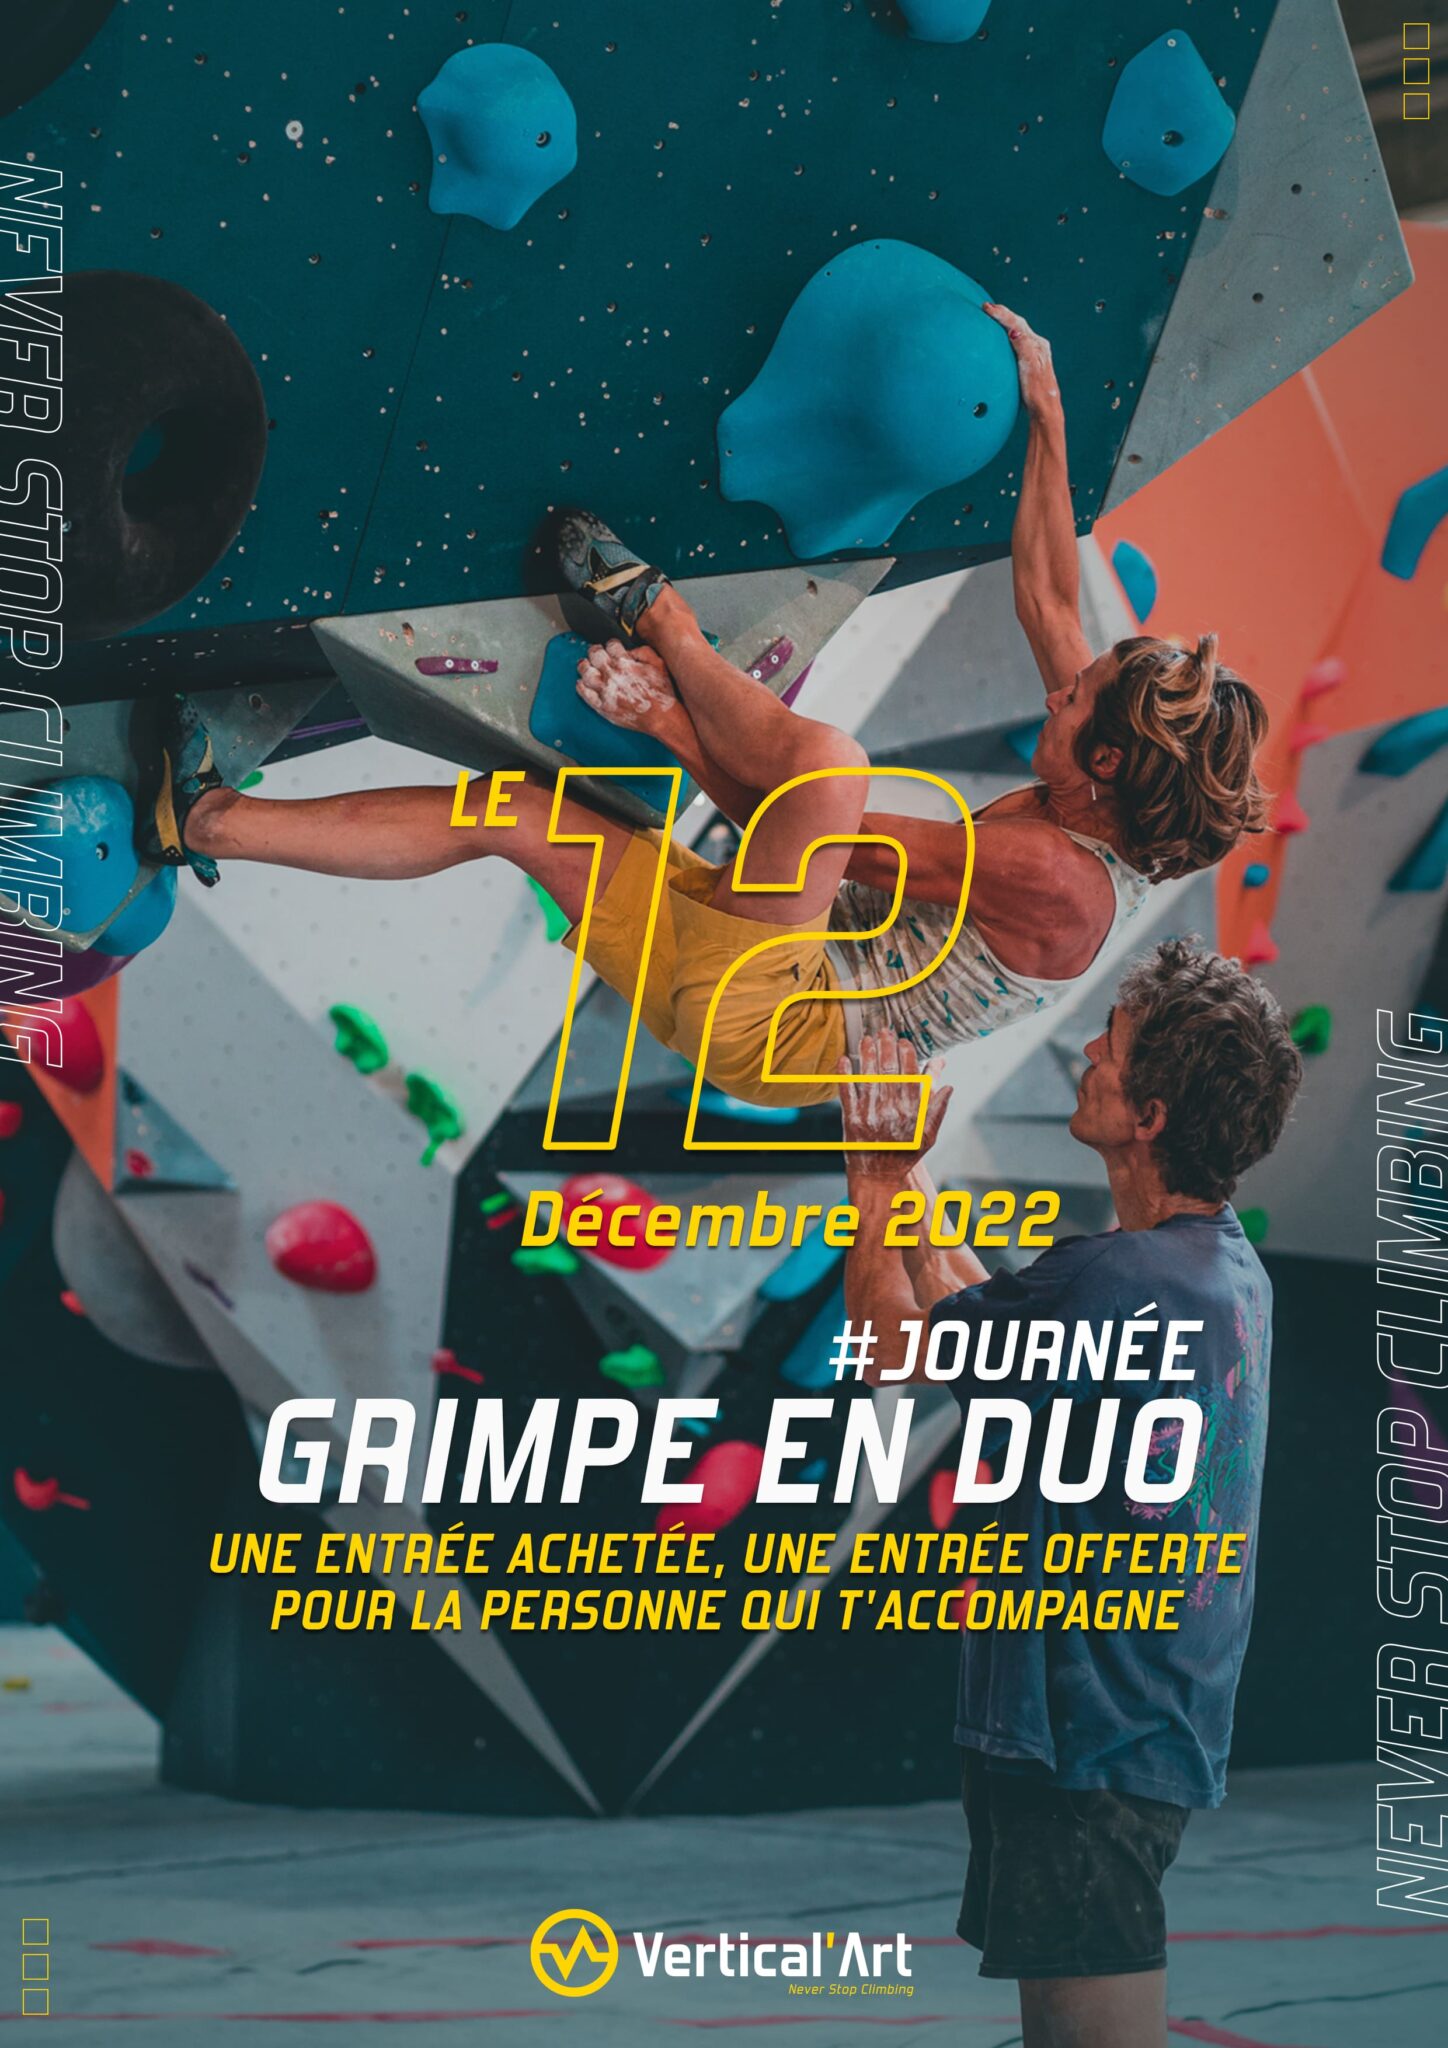 Grimpe en duo Vertical'Art 12 décembre 2022 une entrée achetée, une offerte